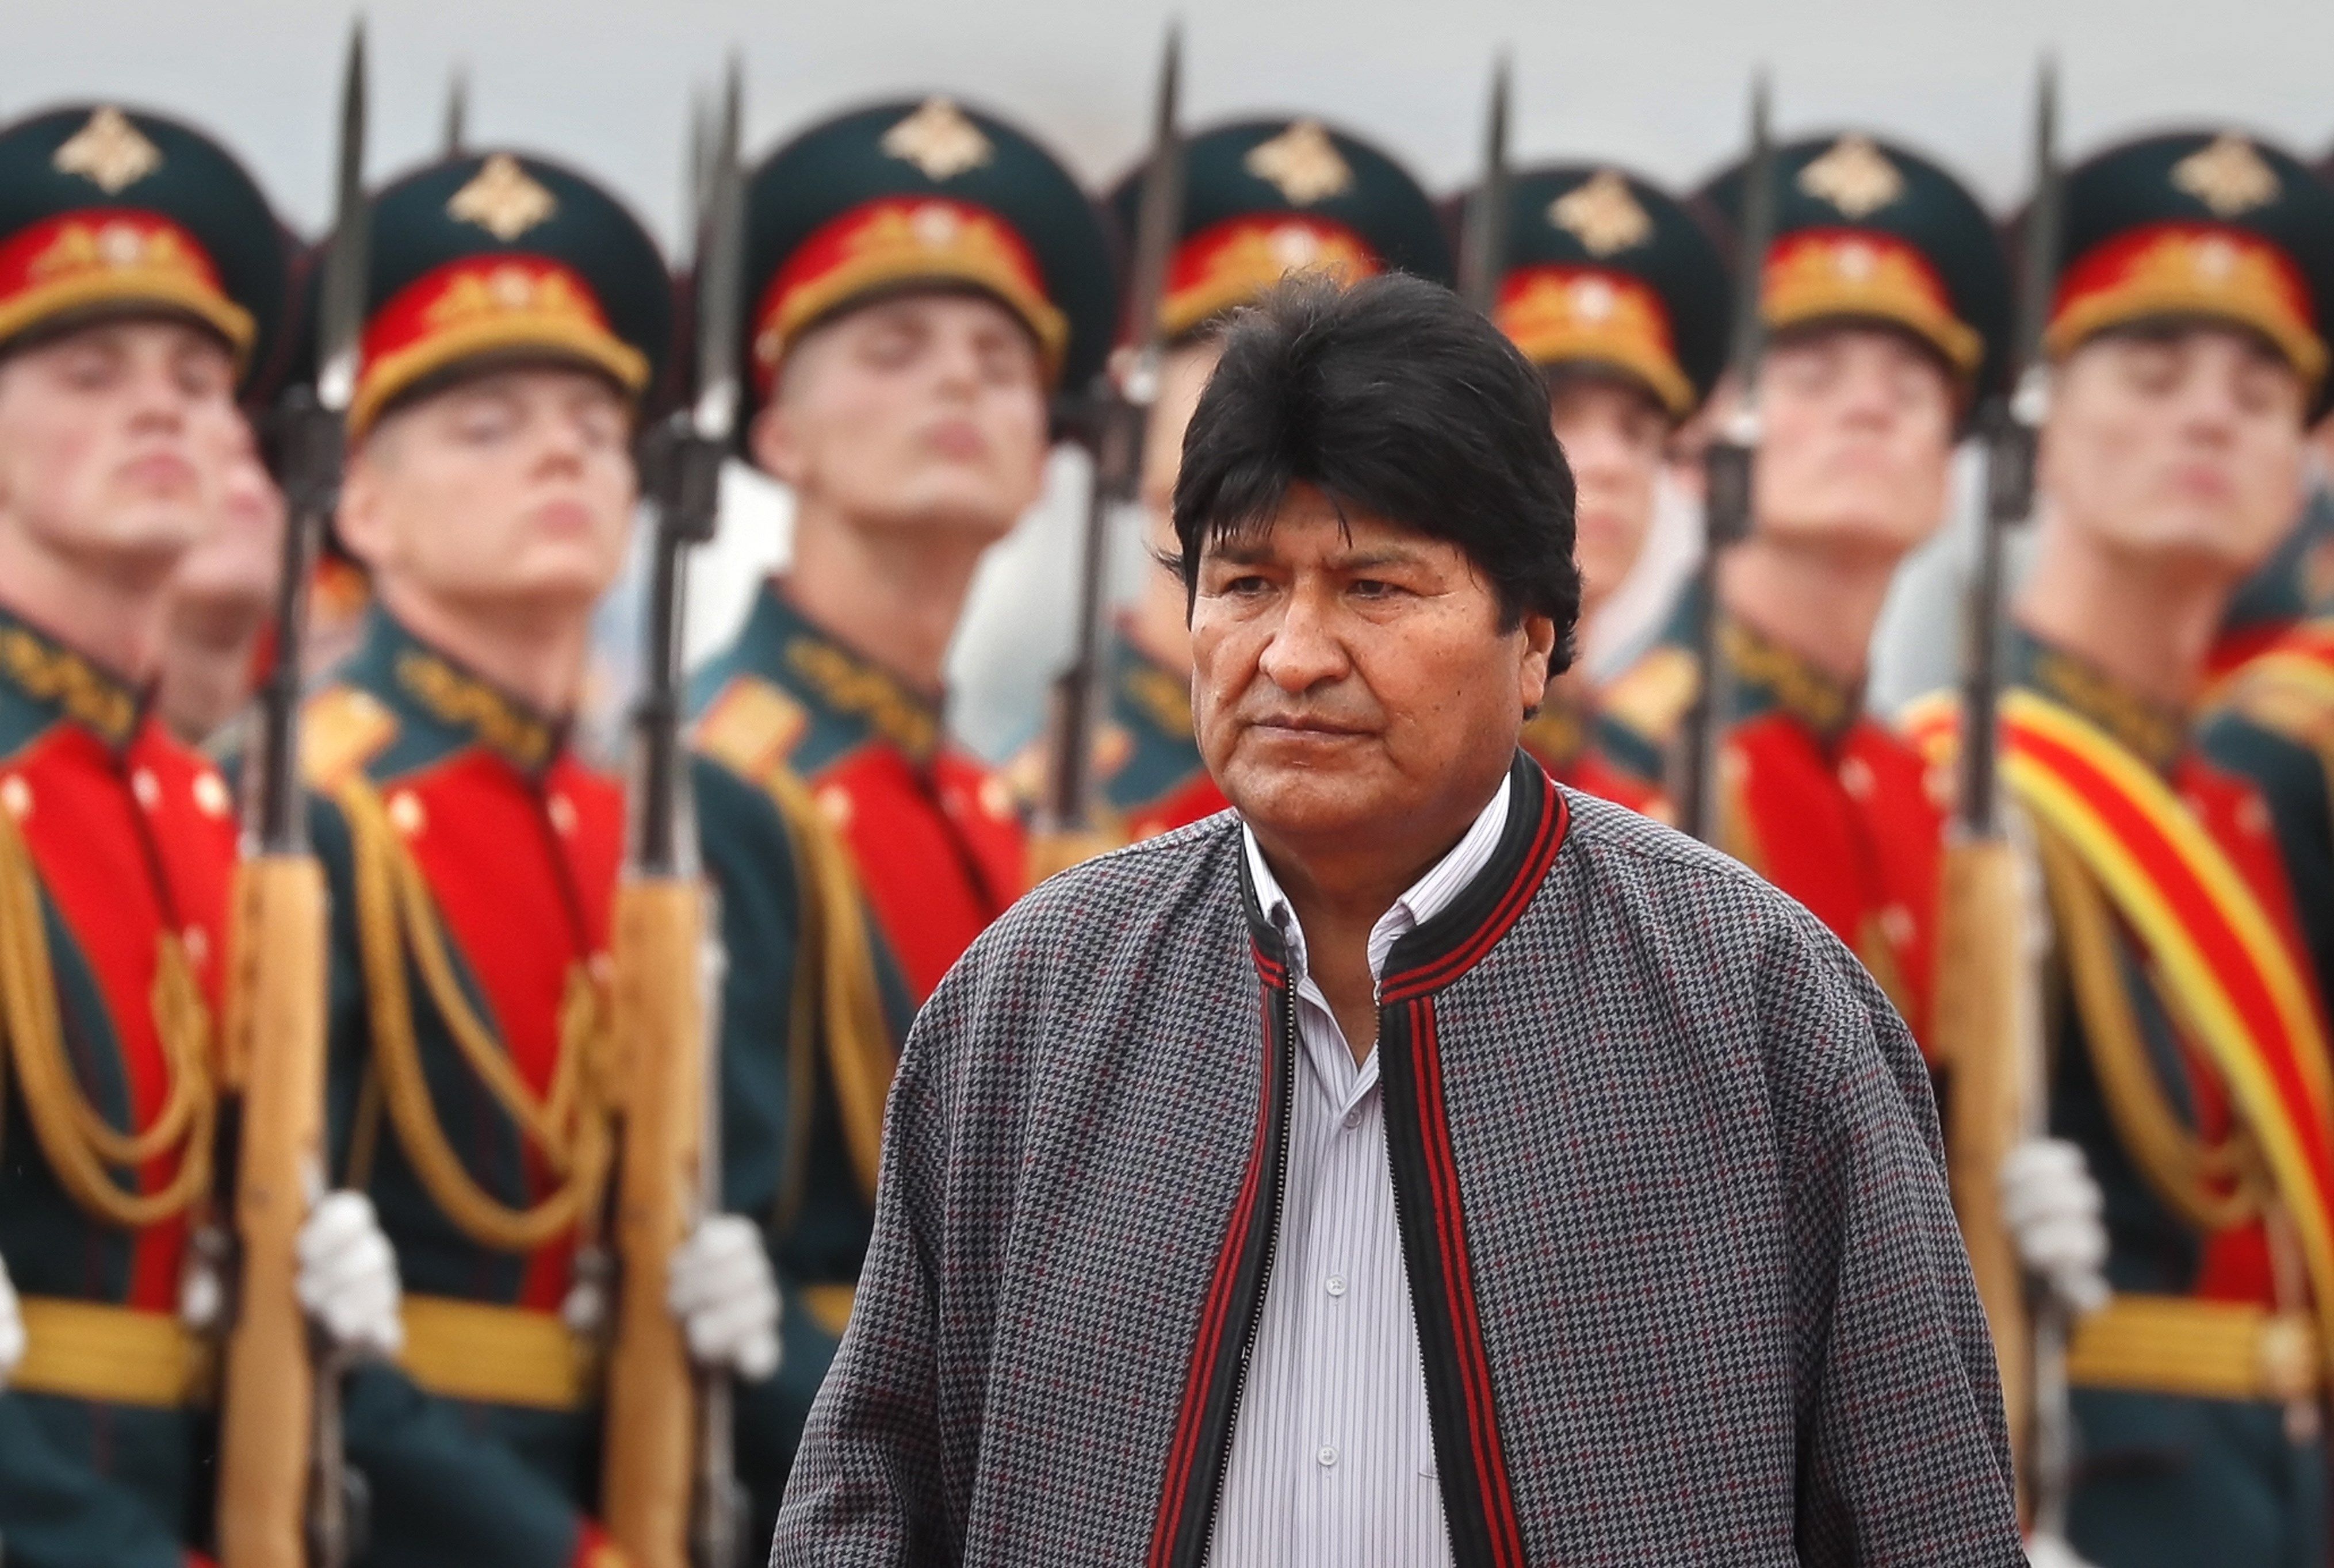 Copia de dictador: Evo Morales recibe doctorado honoris causa de universidad rusa